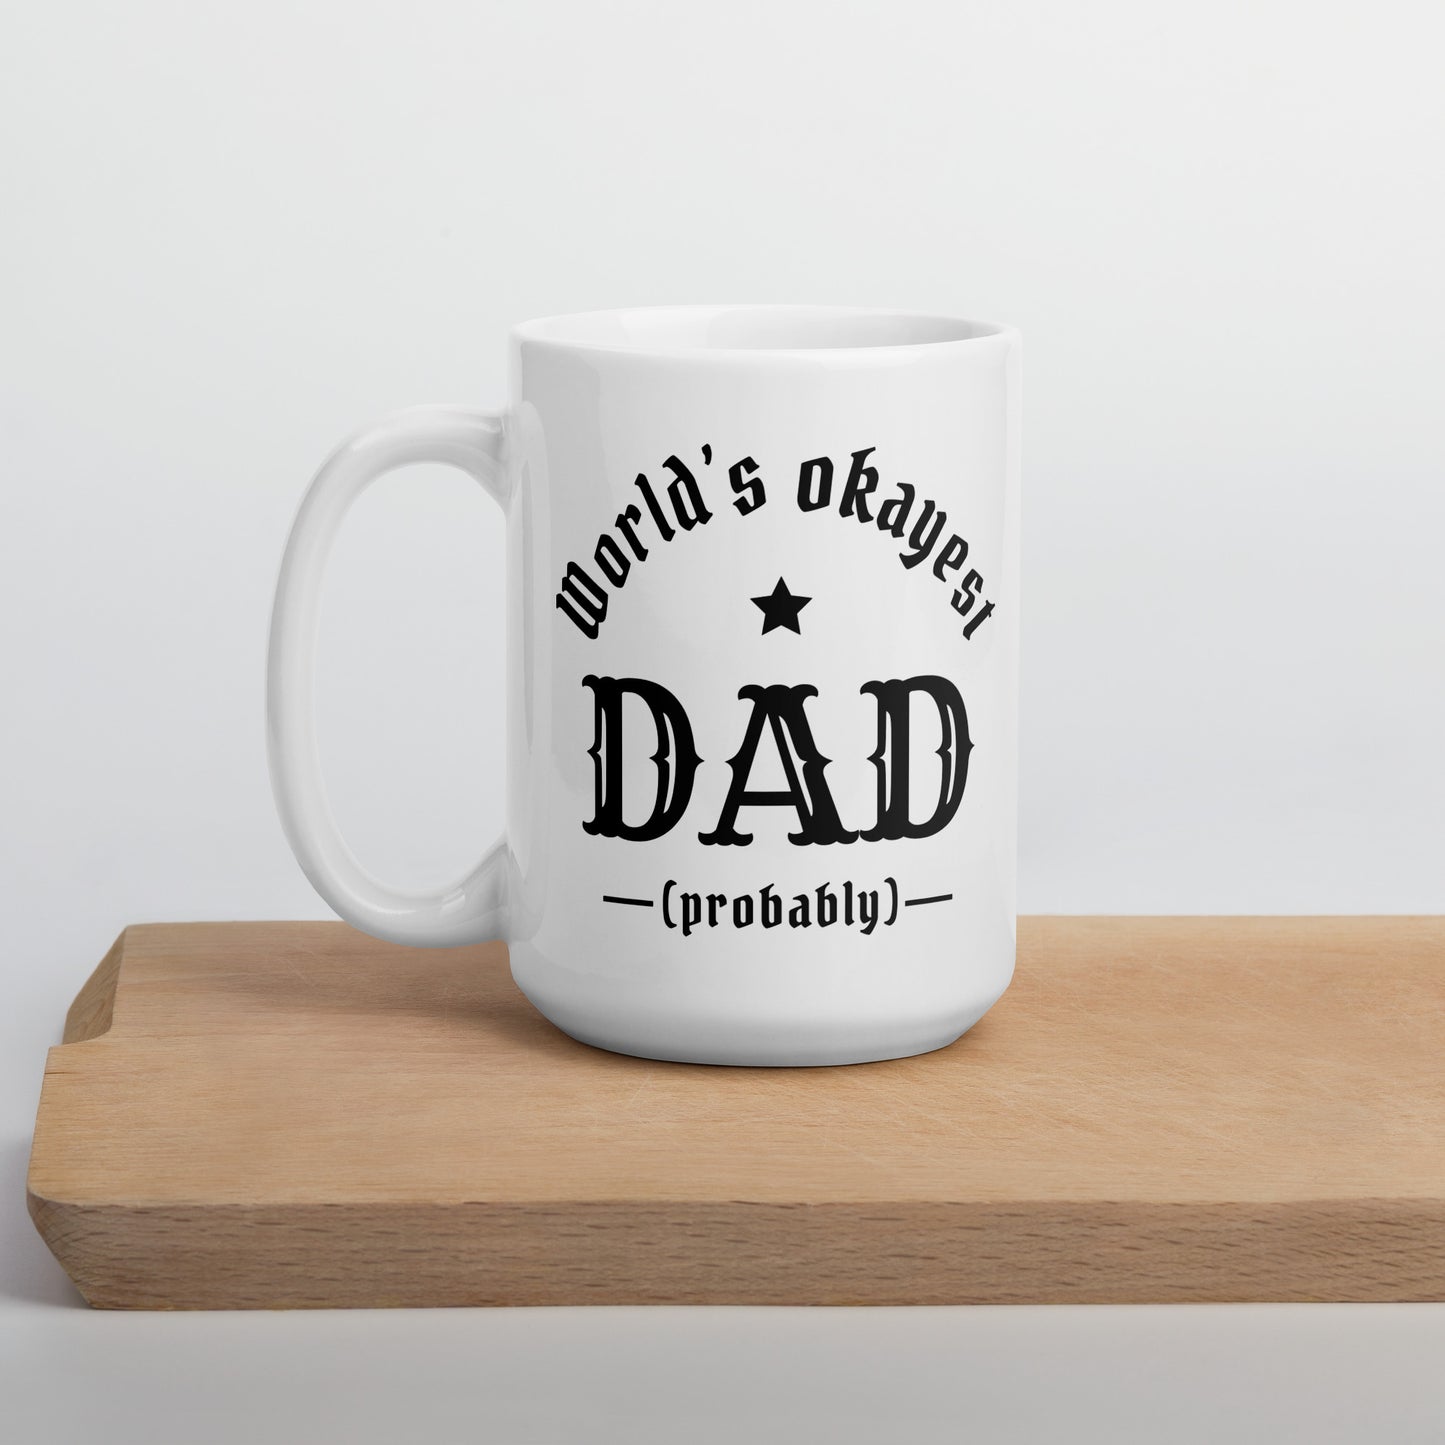 World's Okayest Dad! (probably) White glossy mug